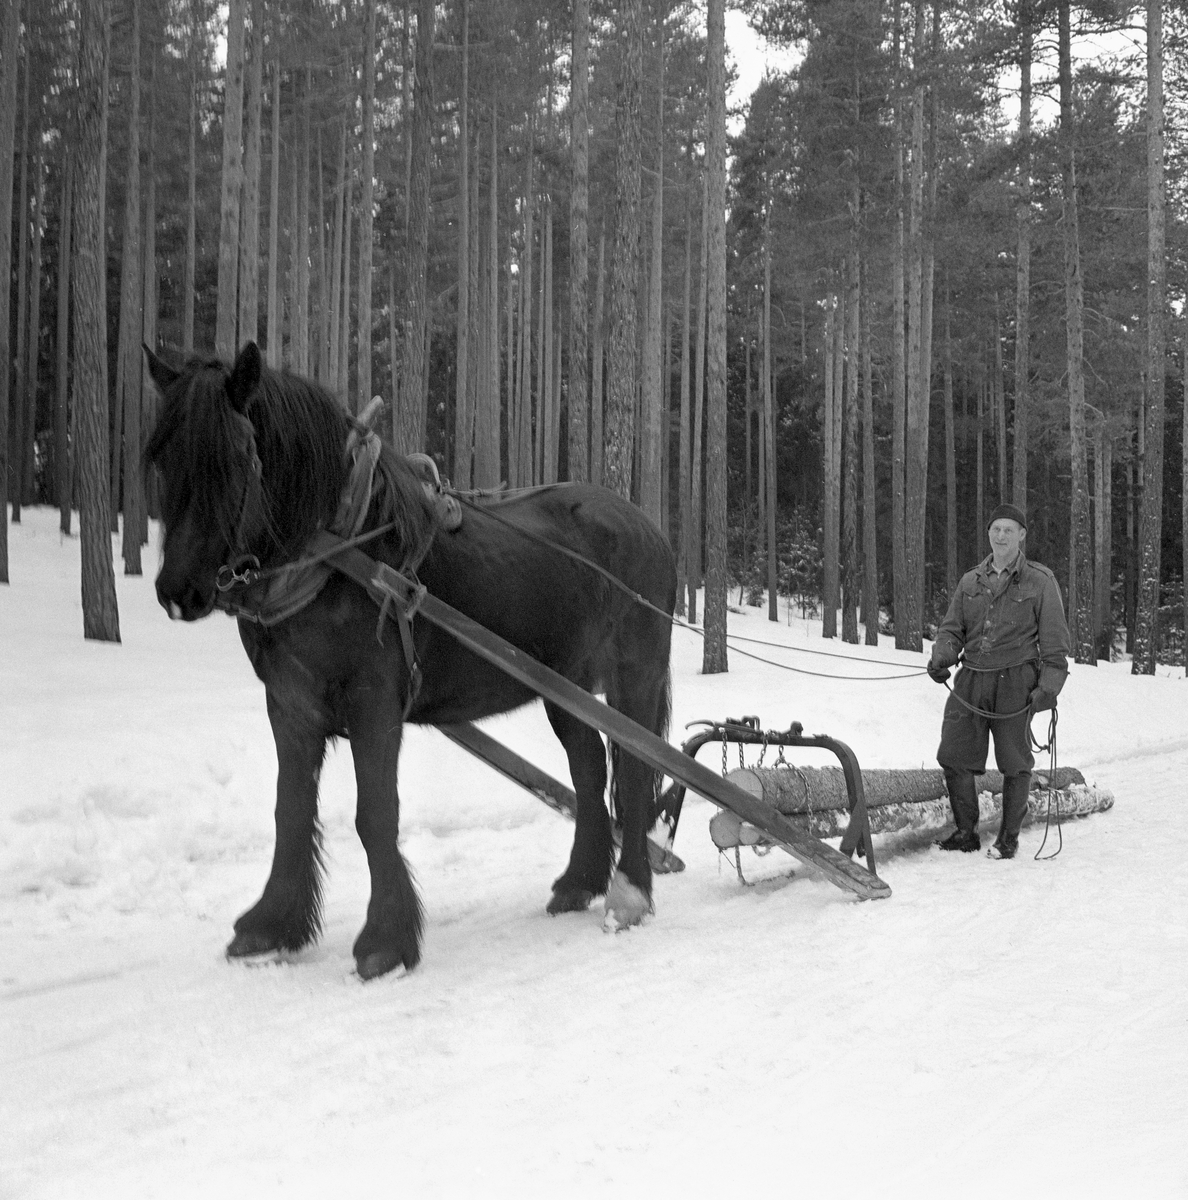 Tømmerlunning med hest i Svartholtet i Elverum. Kjørekaren er Johan Rasch (1916-2009), som drev småbruket Grønstad og arbeidet for Statens skoger gjennom mesteparten av sitt yrkesarktive liv. Her lunnet Johan ubarket tømmer ved hjelp av et redskap som ble kalt lunnedrag, lunnesulky eller odalsdrag. Den siste betegnelsen henspiller på at skogsarbeideren Emil Ruud (1904-1974), som fant opp dette redskapet, var fra Mo i Nord-Odal. Lunnedraget besto av to dragarmer - skjæker - av bjørkevirke, som var forlenget bakover og jernbeslått i den ytre enden, som fungerte som meier. Mellom oversidene på disse endestykkene er det spent ei kraftig jernbøyle med snarelenker på toppen. Disse lenkene ble viklet et par ganger rundt stokkendene, og deretter løftet, slik at de fremre stokkendene ble hengende litt opp fra bakken, mens bakendene skled på snø- og isunderlaget når hesten begynte å gå. Denne kjøredoningen var godt egnet for transport av små tømmerkvanta i ulendt terreng over korte avstander.

Johan Rasch var kledd i dongerijakke og vadmelsbukser da dette fotografiet ble tatt. Han hadde støvler på beina, hansker på hendene og lue på hodet.